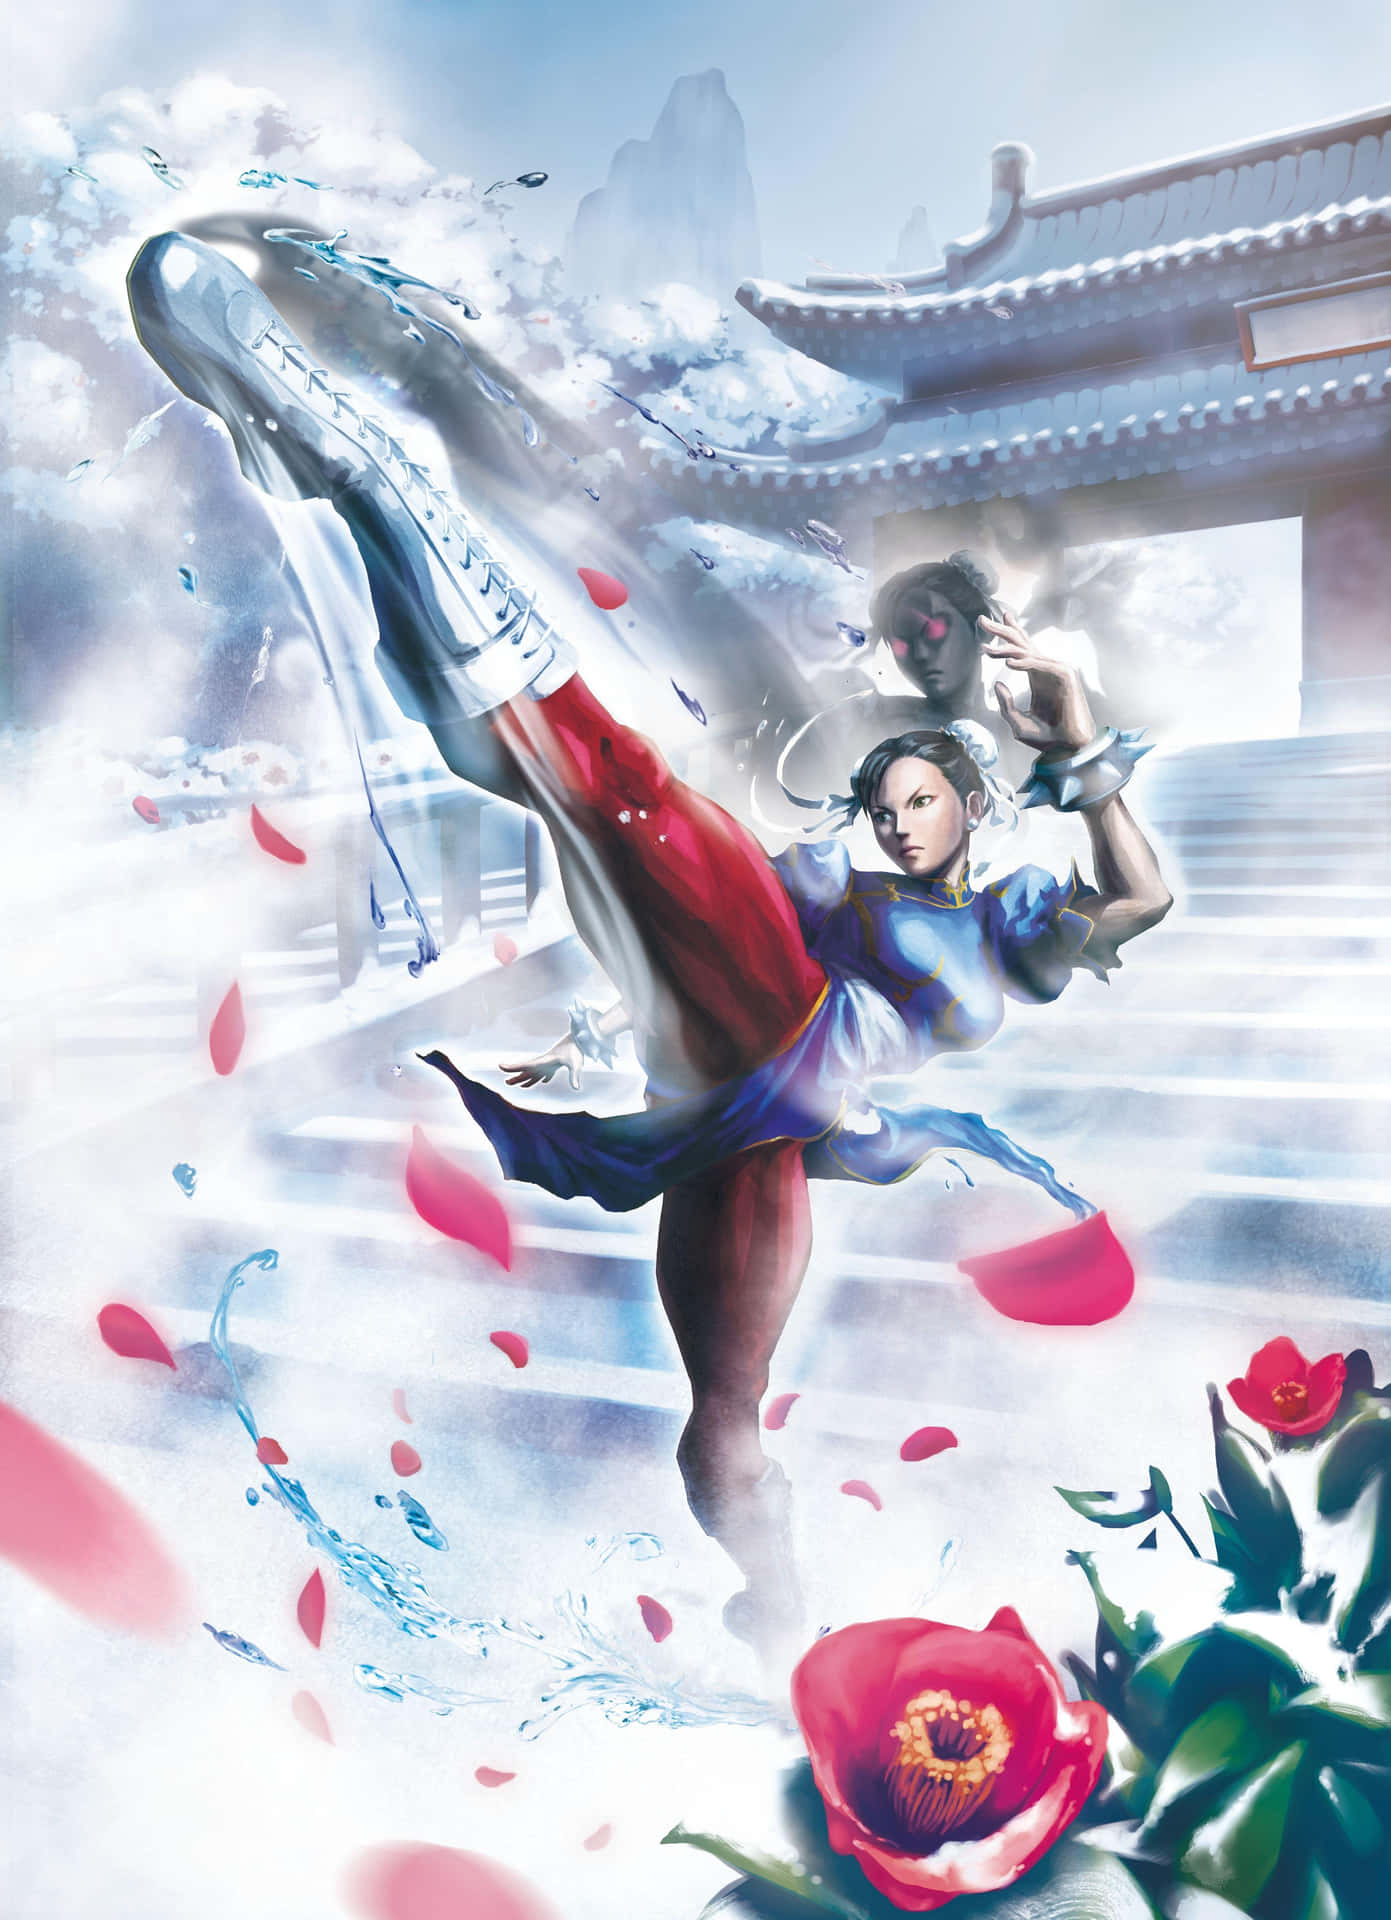 Chun Li Powerful Kick Artwork